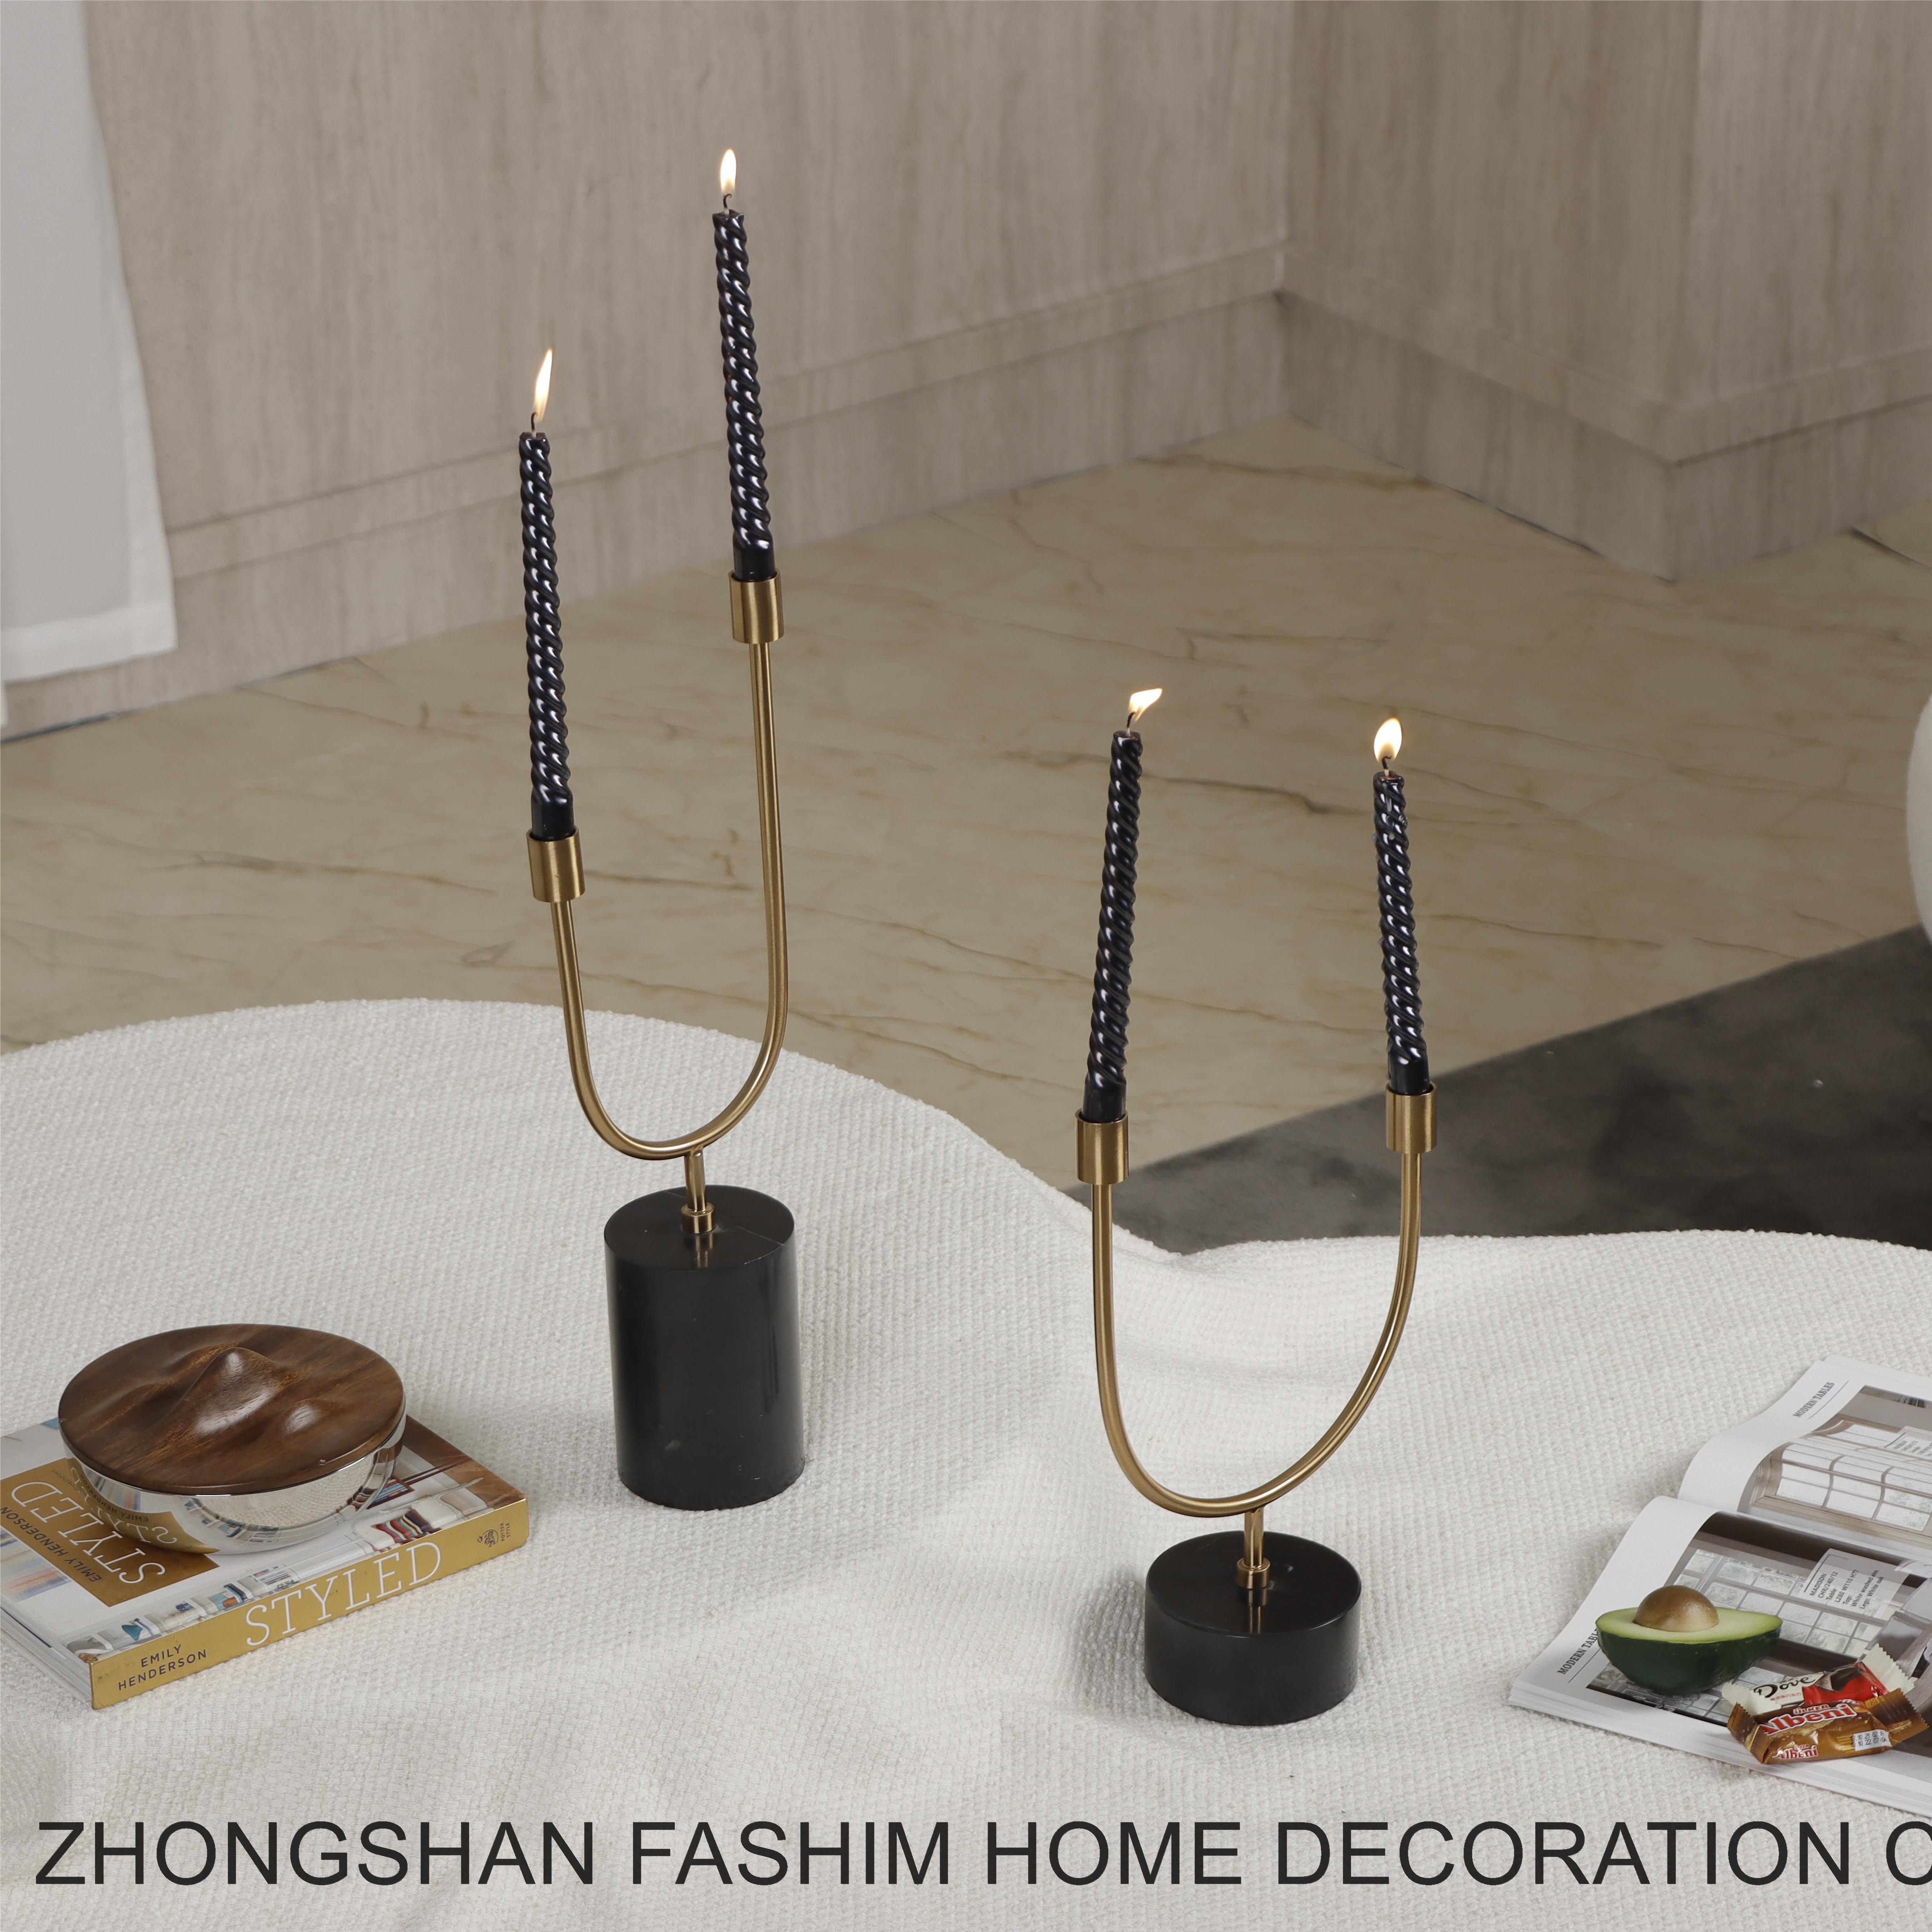 Fashimdecor U-shaped candle holder for interior decoration